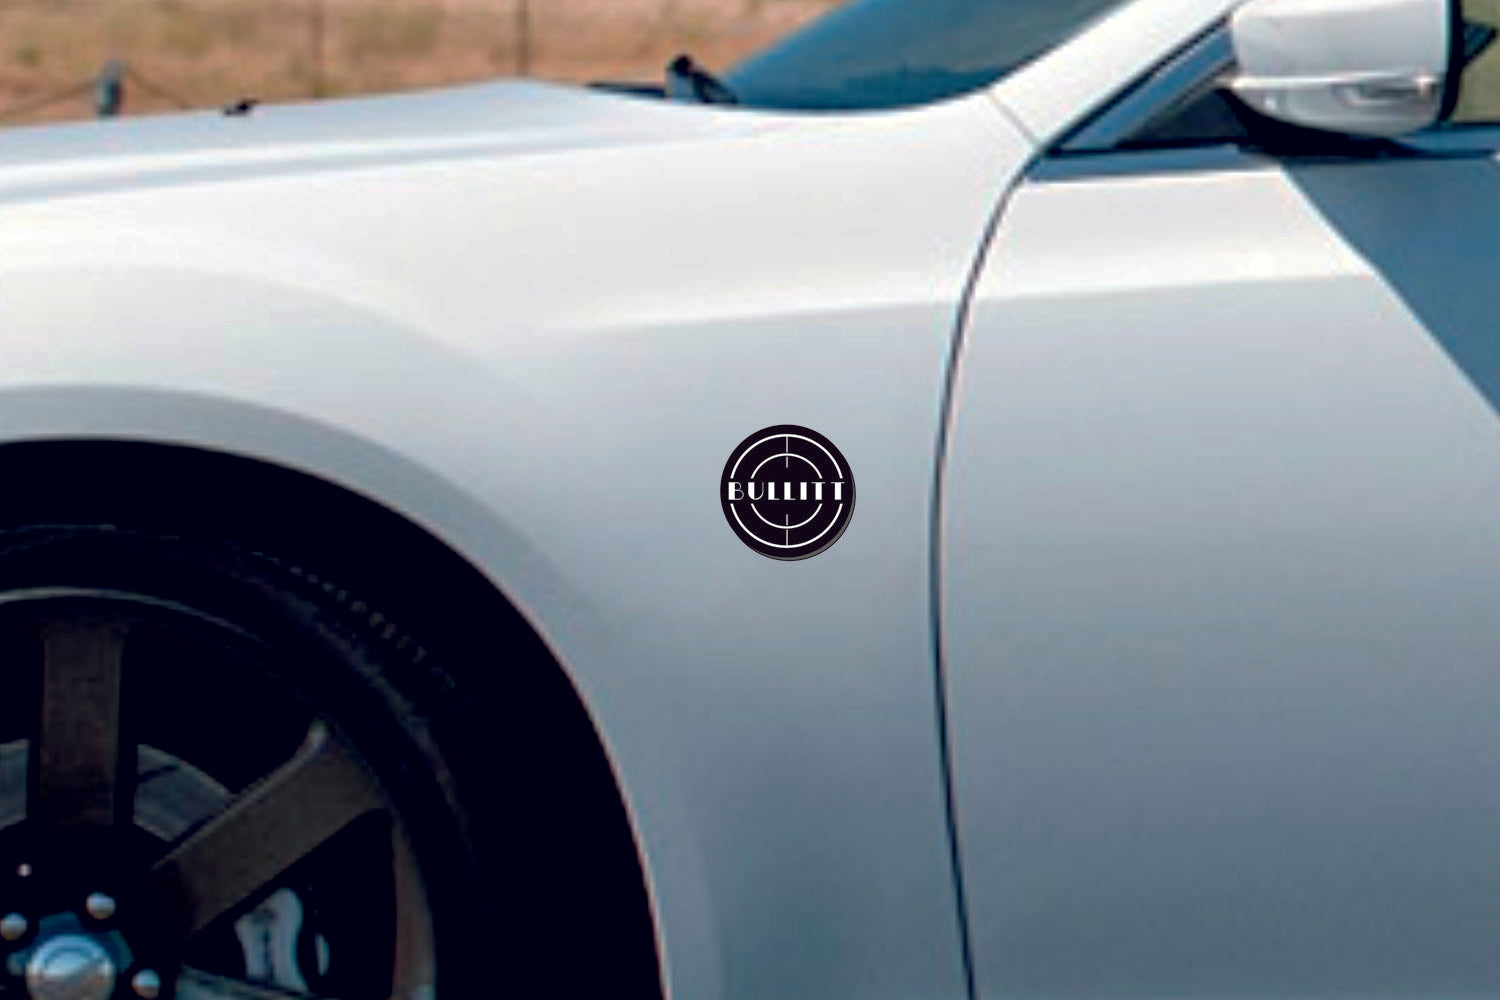 Ford Mustang emblem for fenders with Bullitt logo